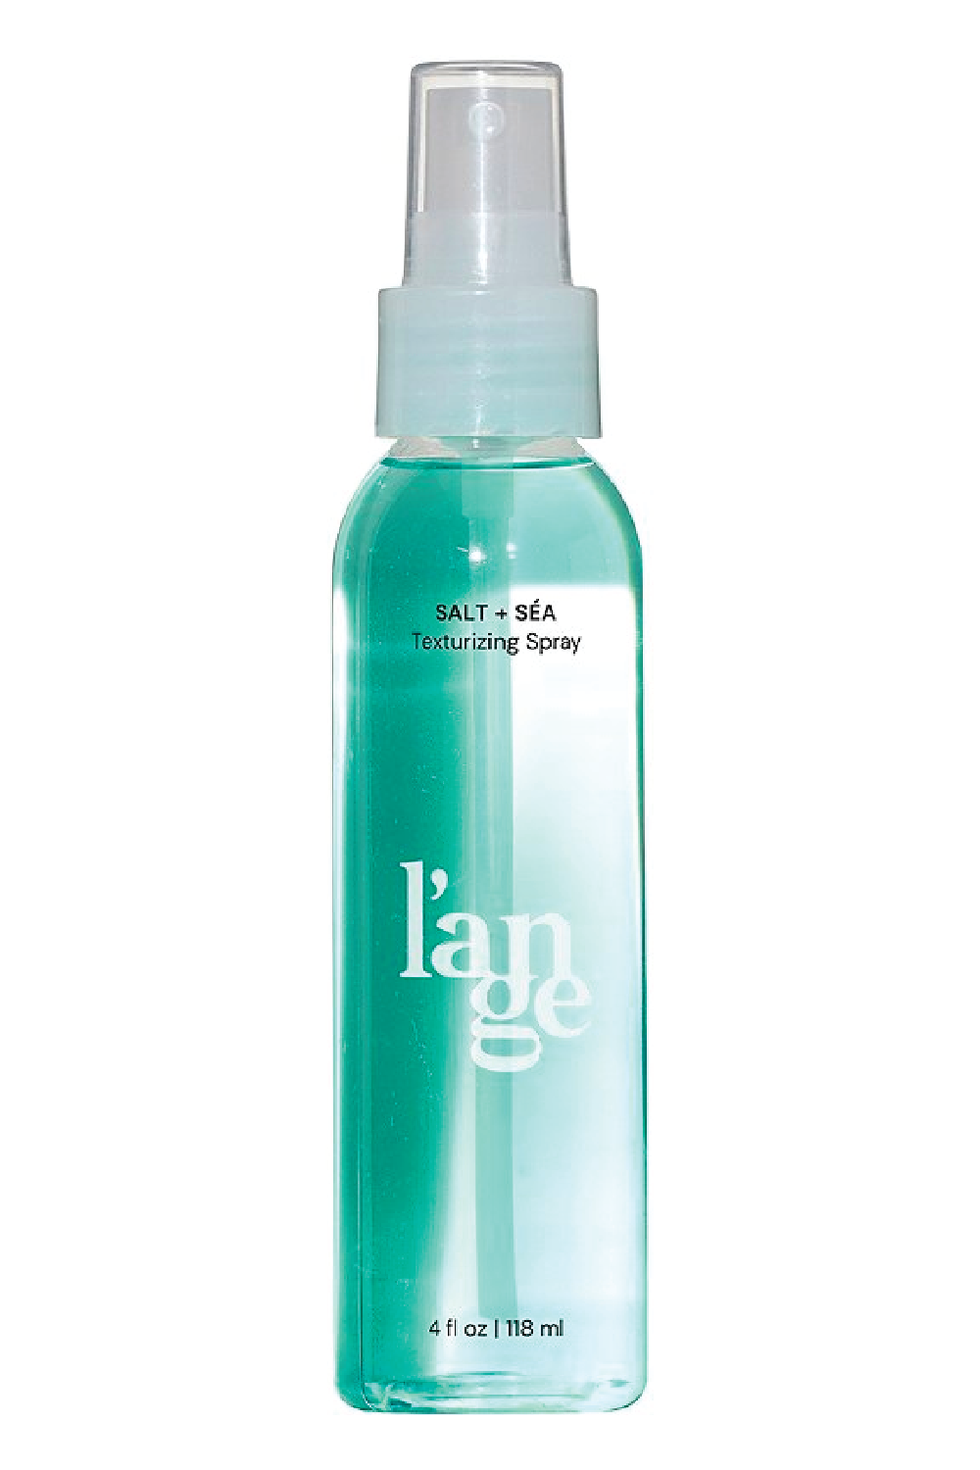 L'ange Salt + Sea Texturizing Spray